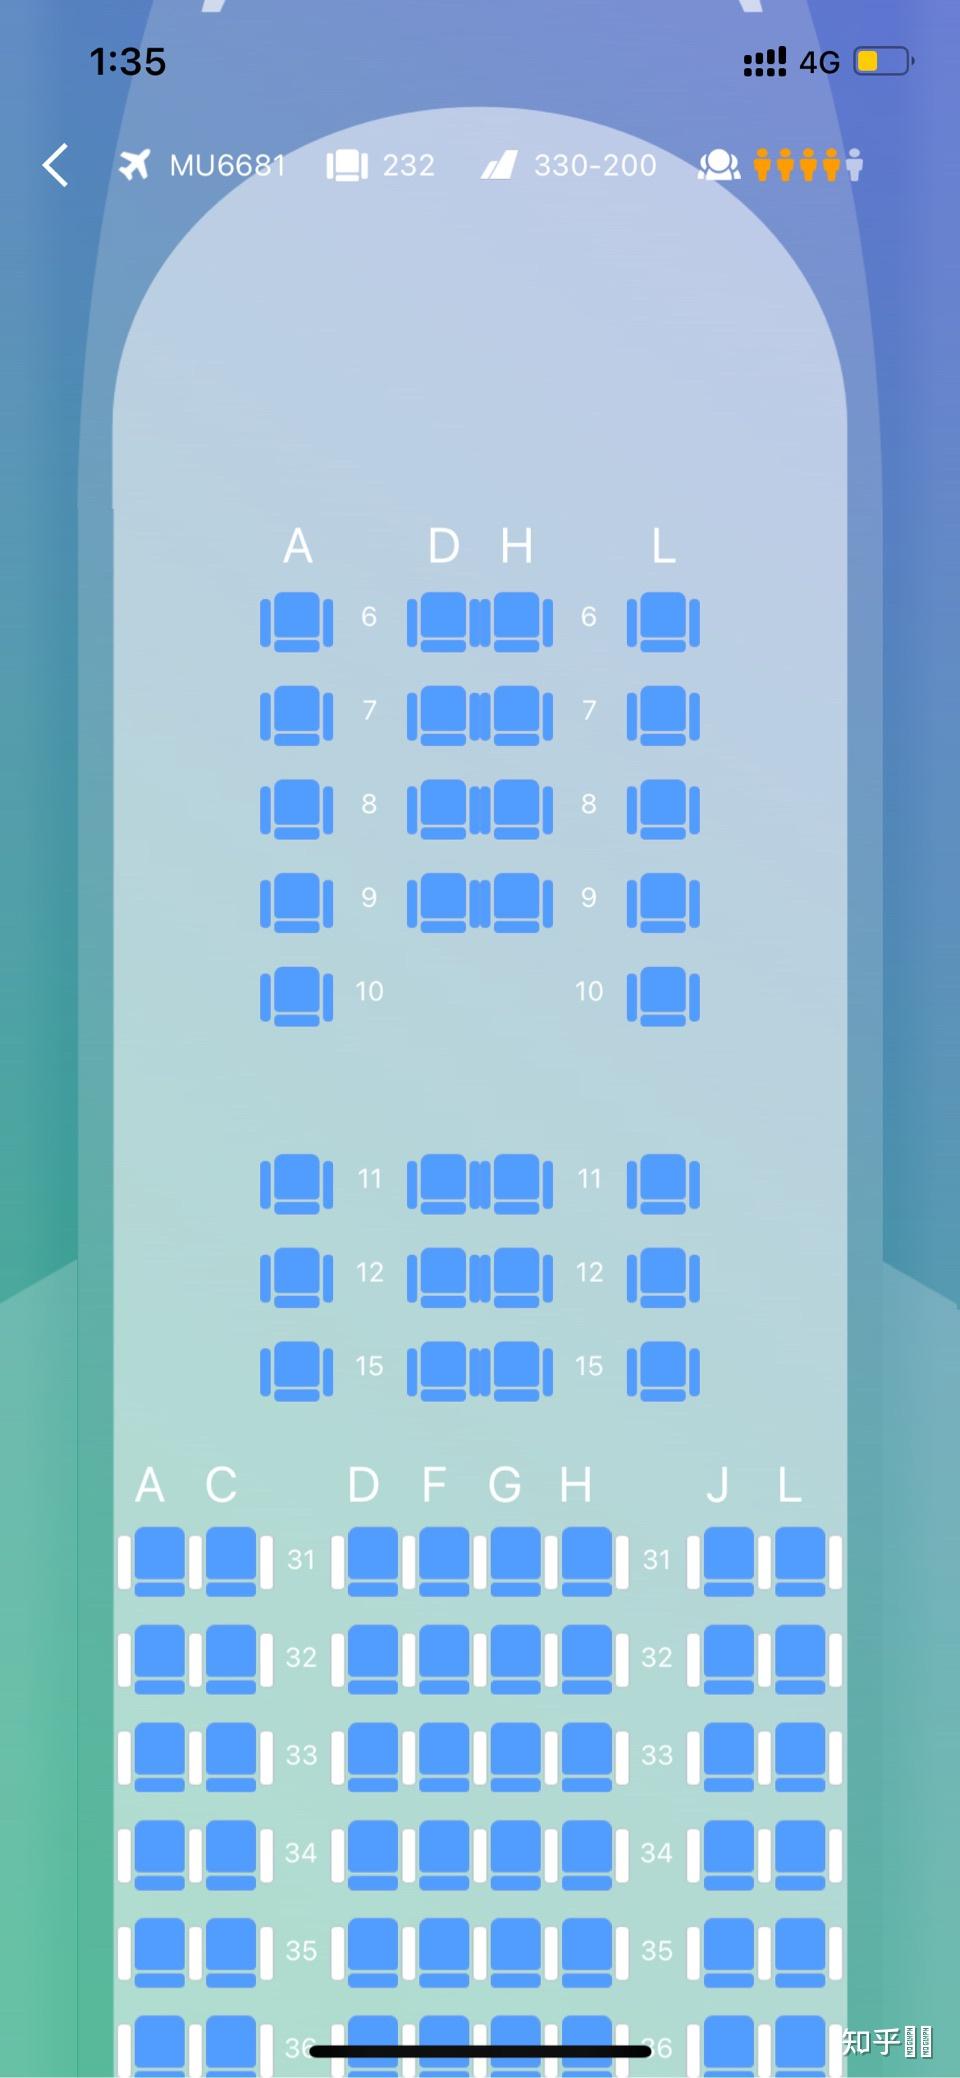 mu6681空客332求教如何选靠窗而且能看到大兴机场全貌的座位